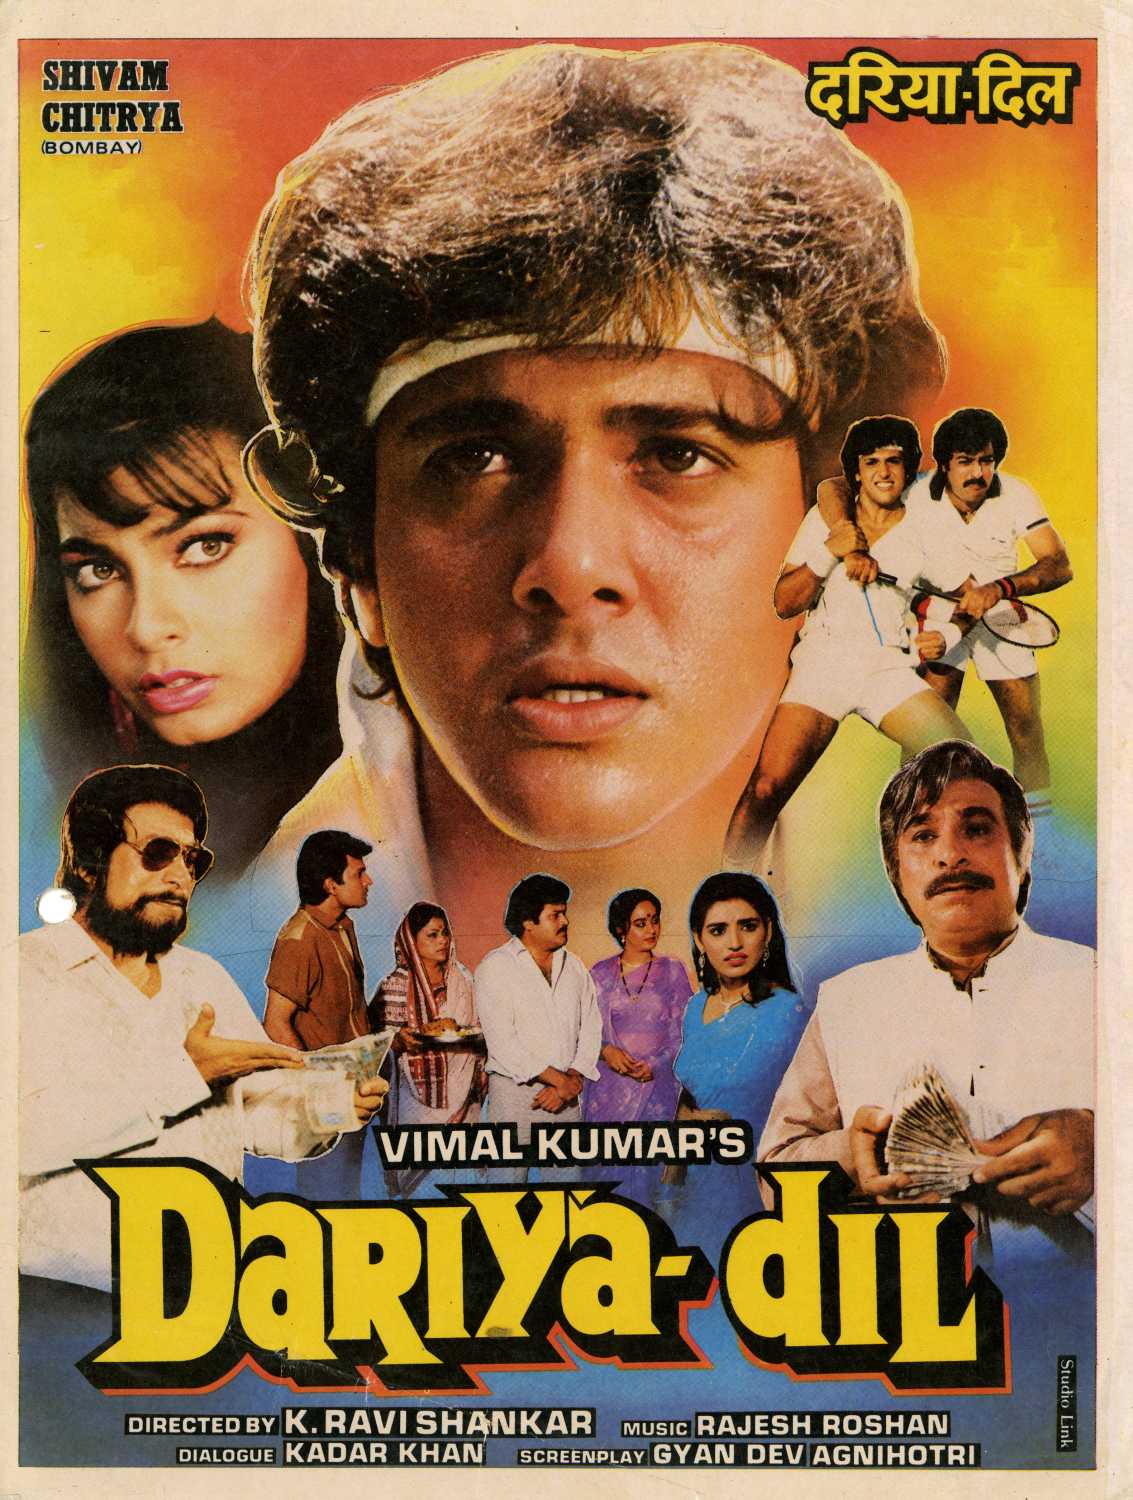 Dariya Dil (1988) Screenshot 3 